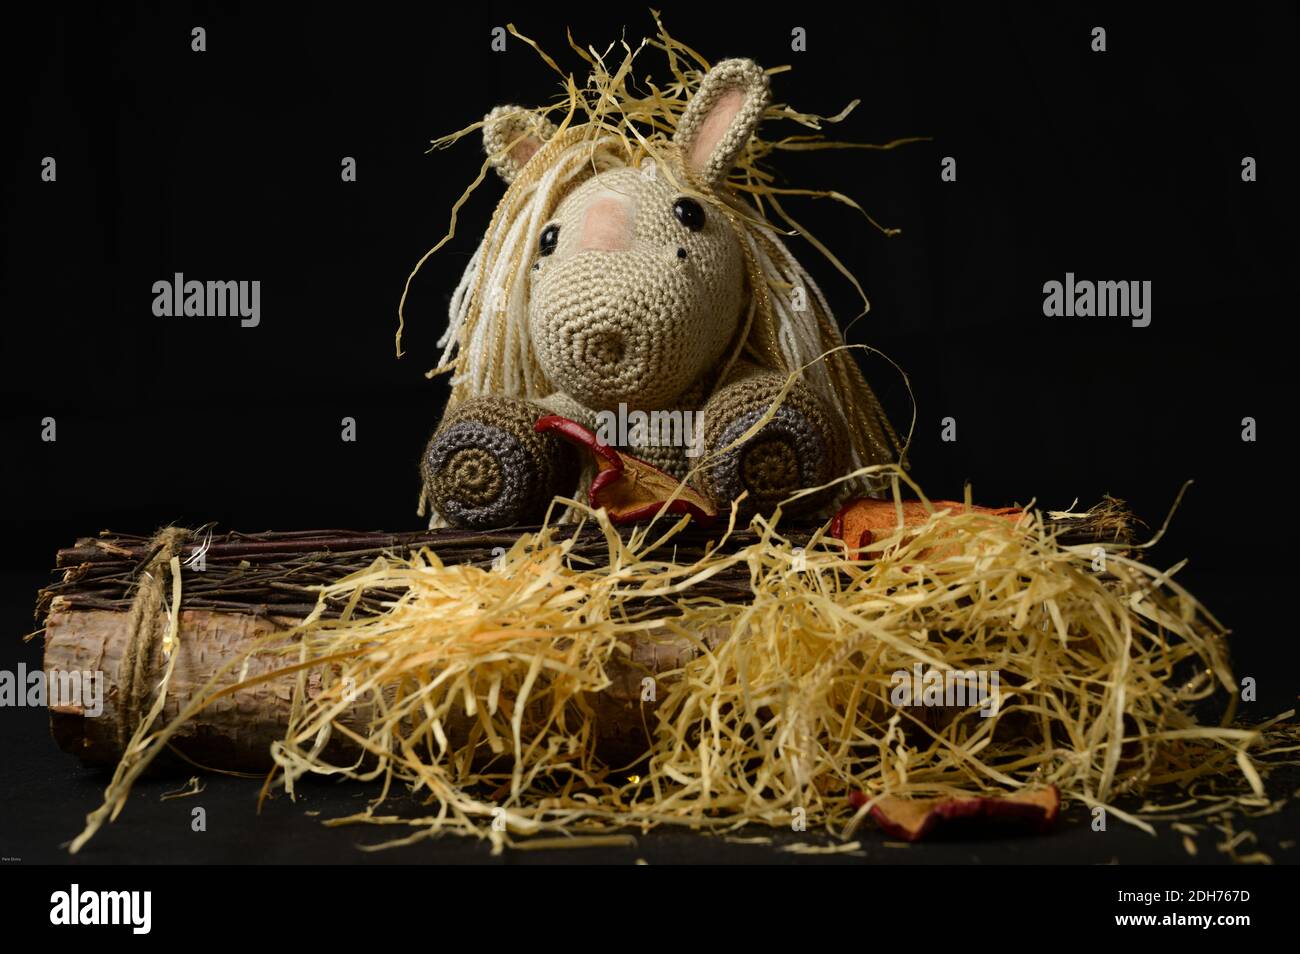 Un giocattolo a cavallo amigurumi uncinetto con paglia decorativa, pezzi di legno e ornamenti su sfondo nero Foto Stock